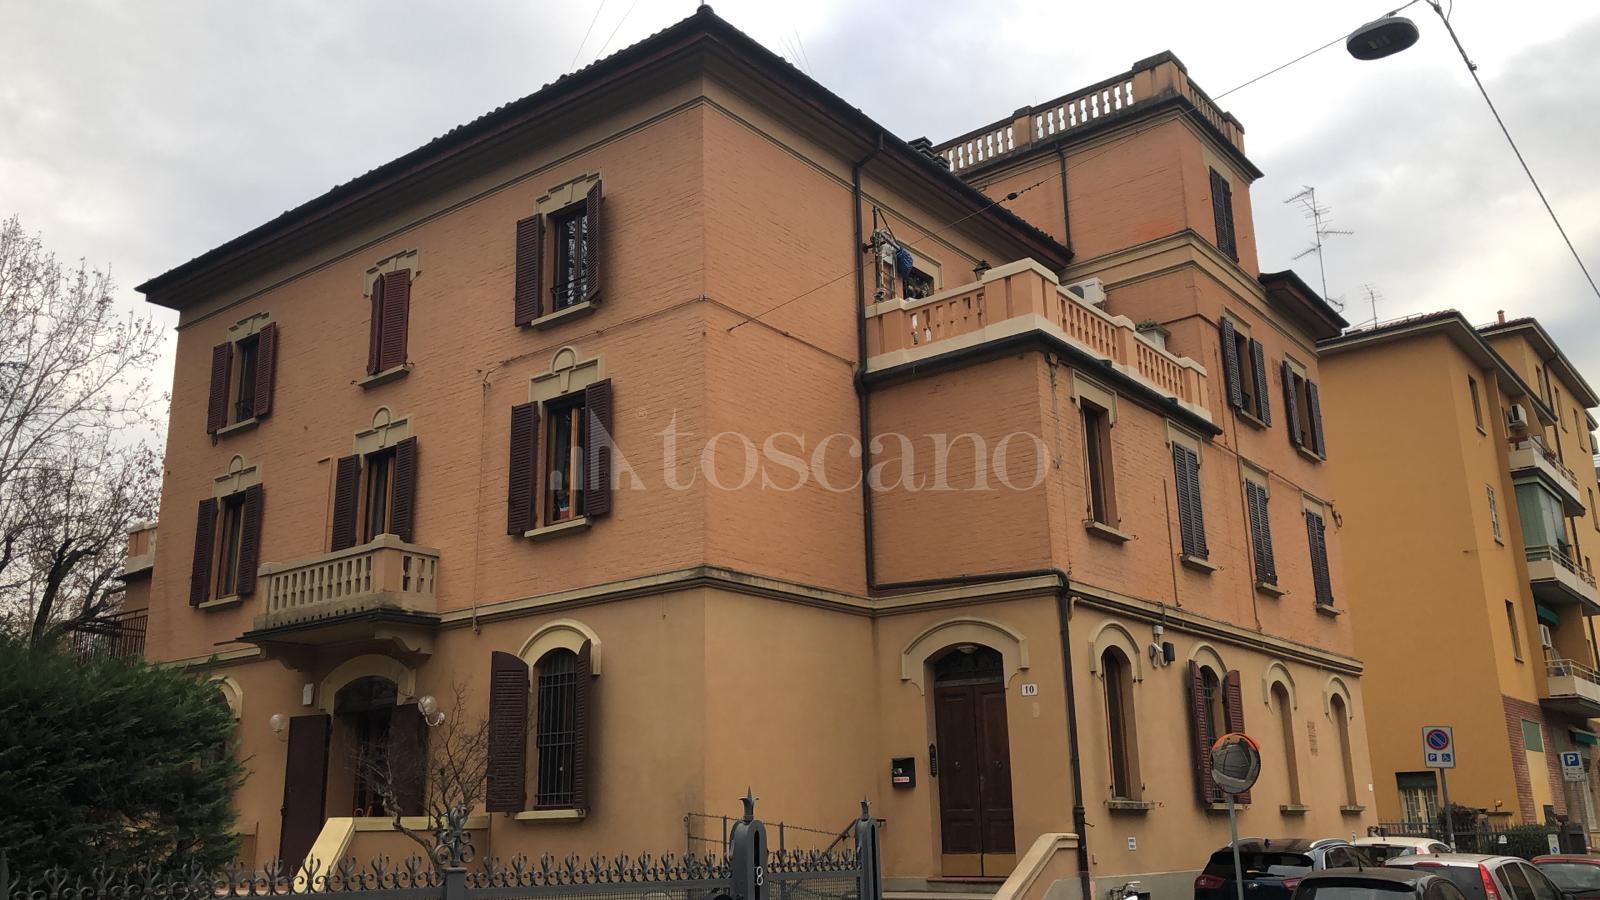 Vendita Casa A Bologna In Via Oslavia Saffi 1 2020 Toscano